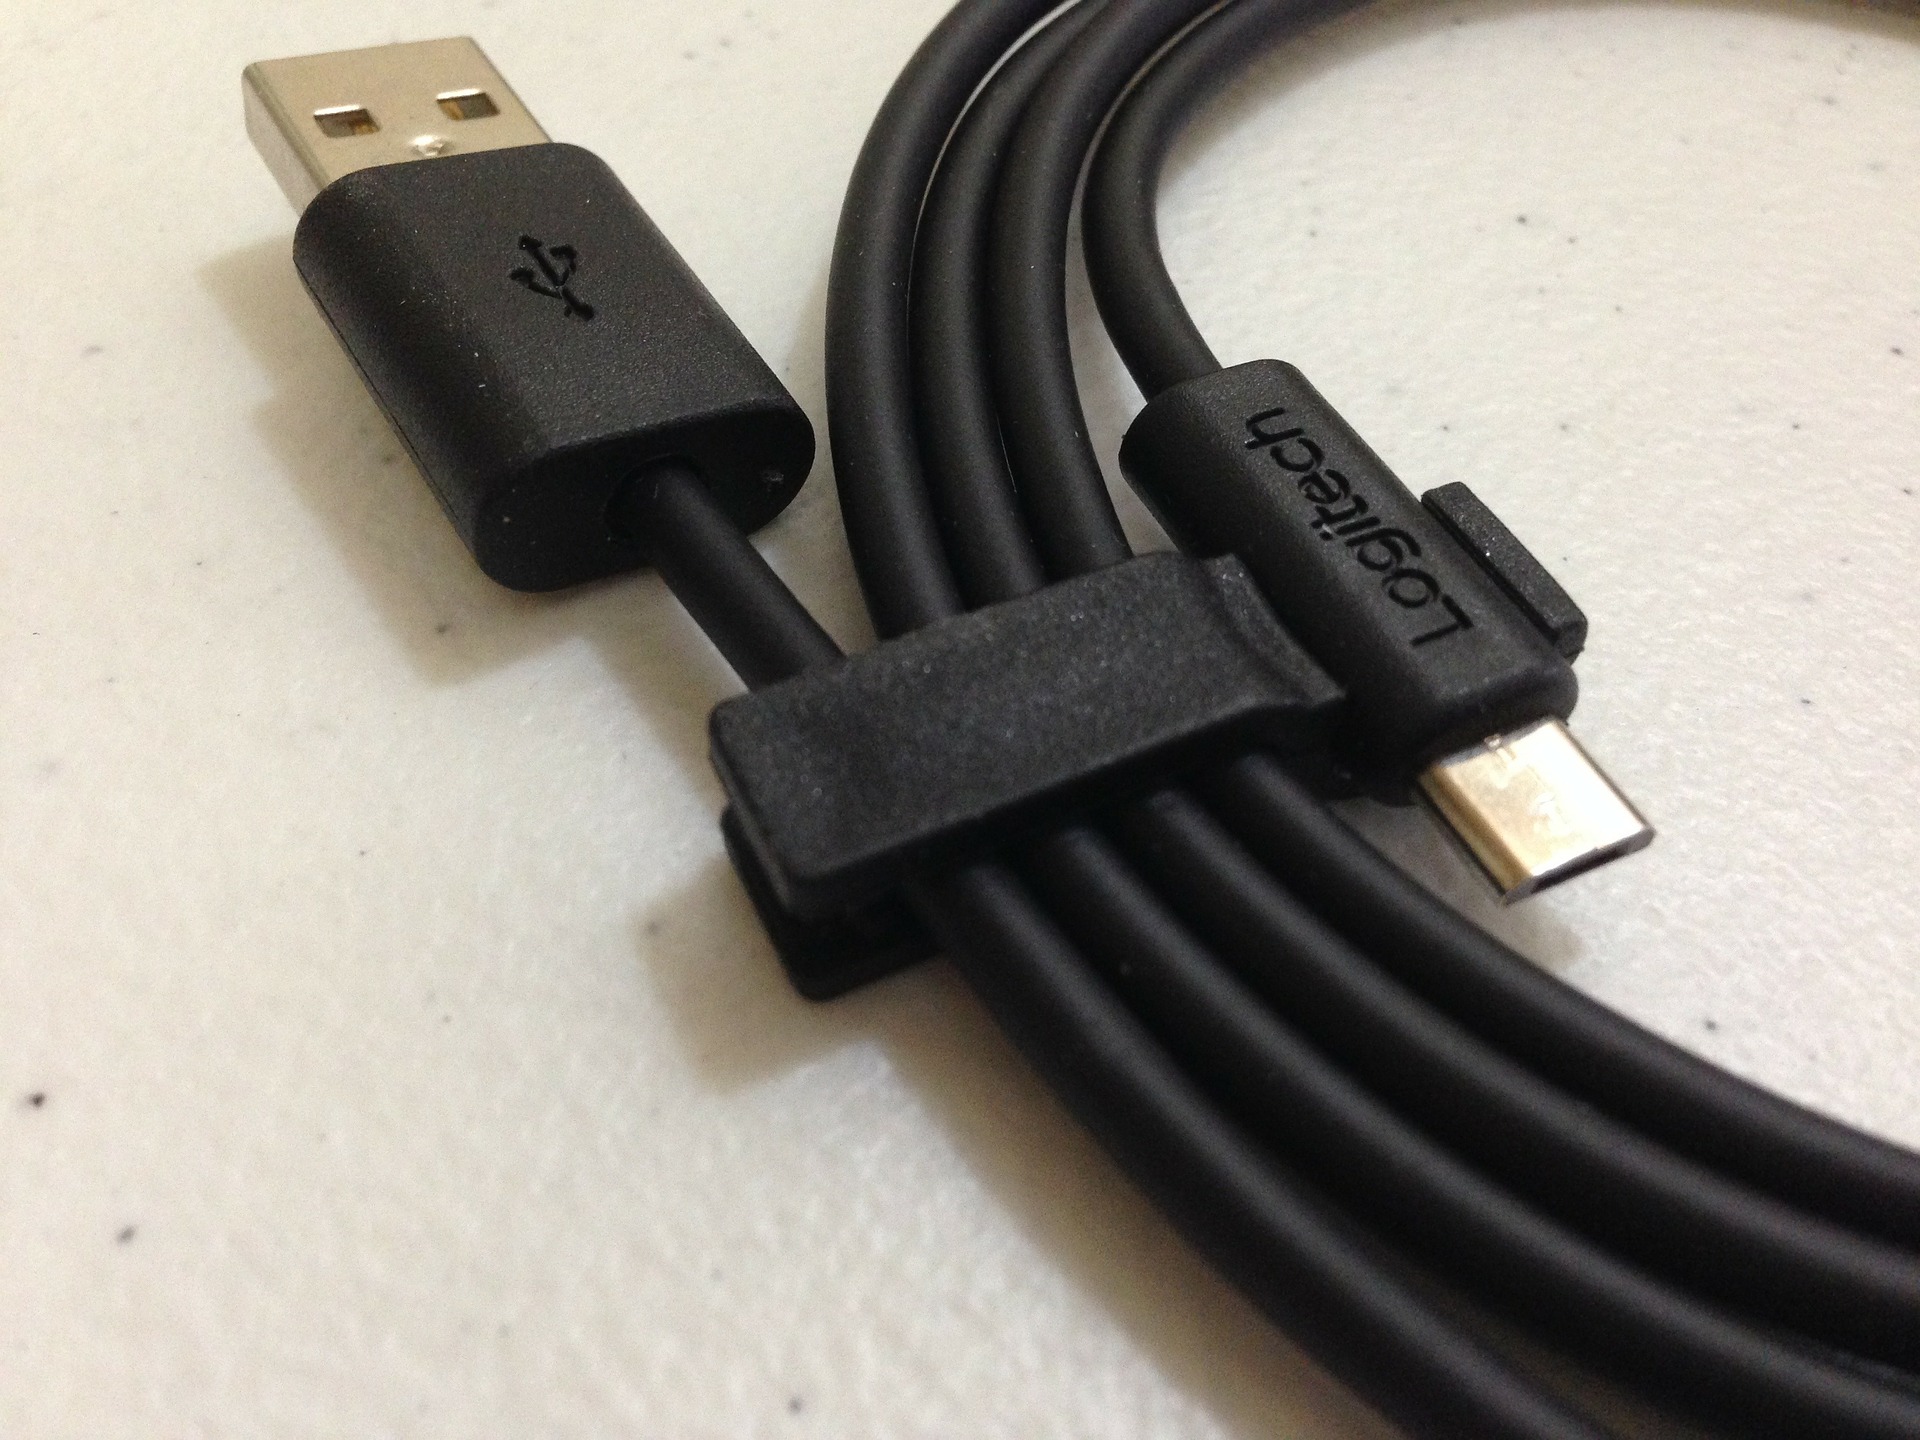 USB-A vs USB-C